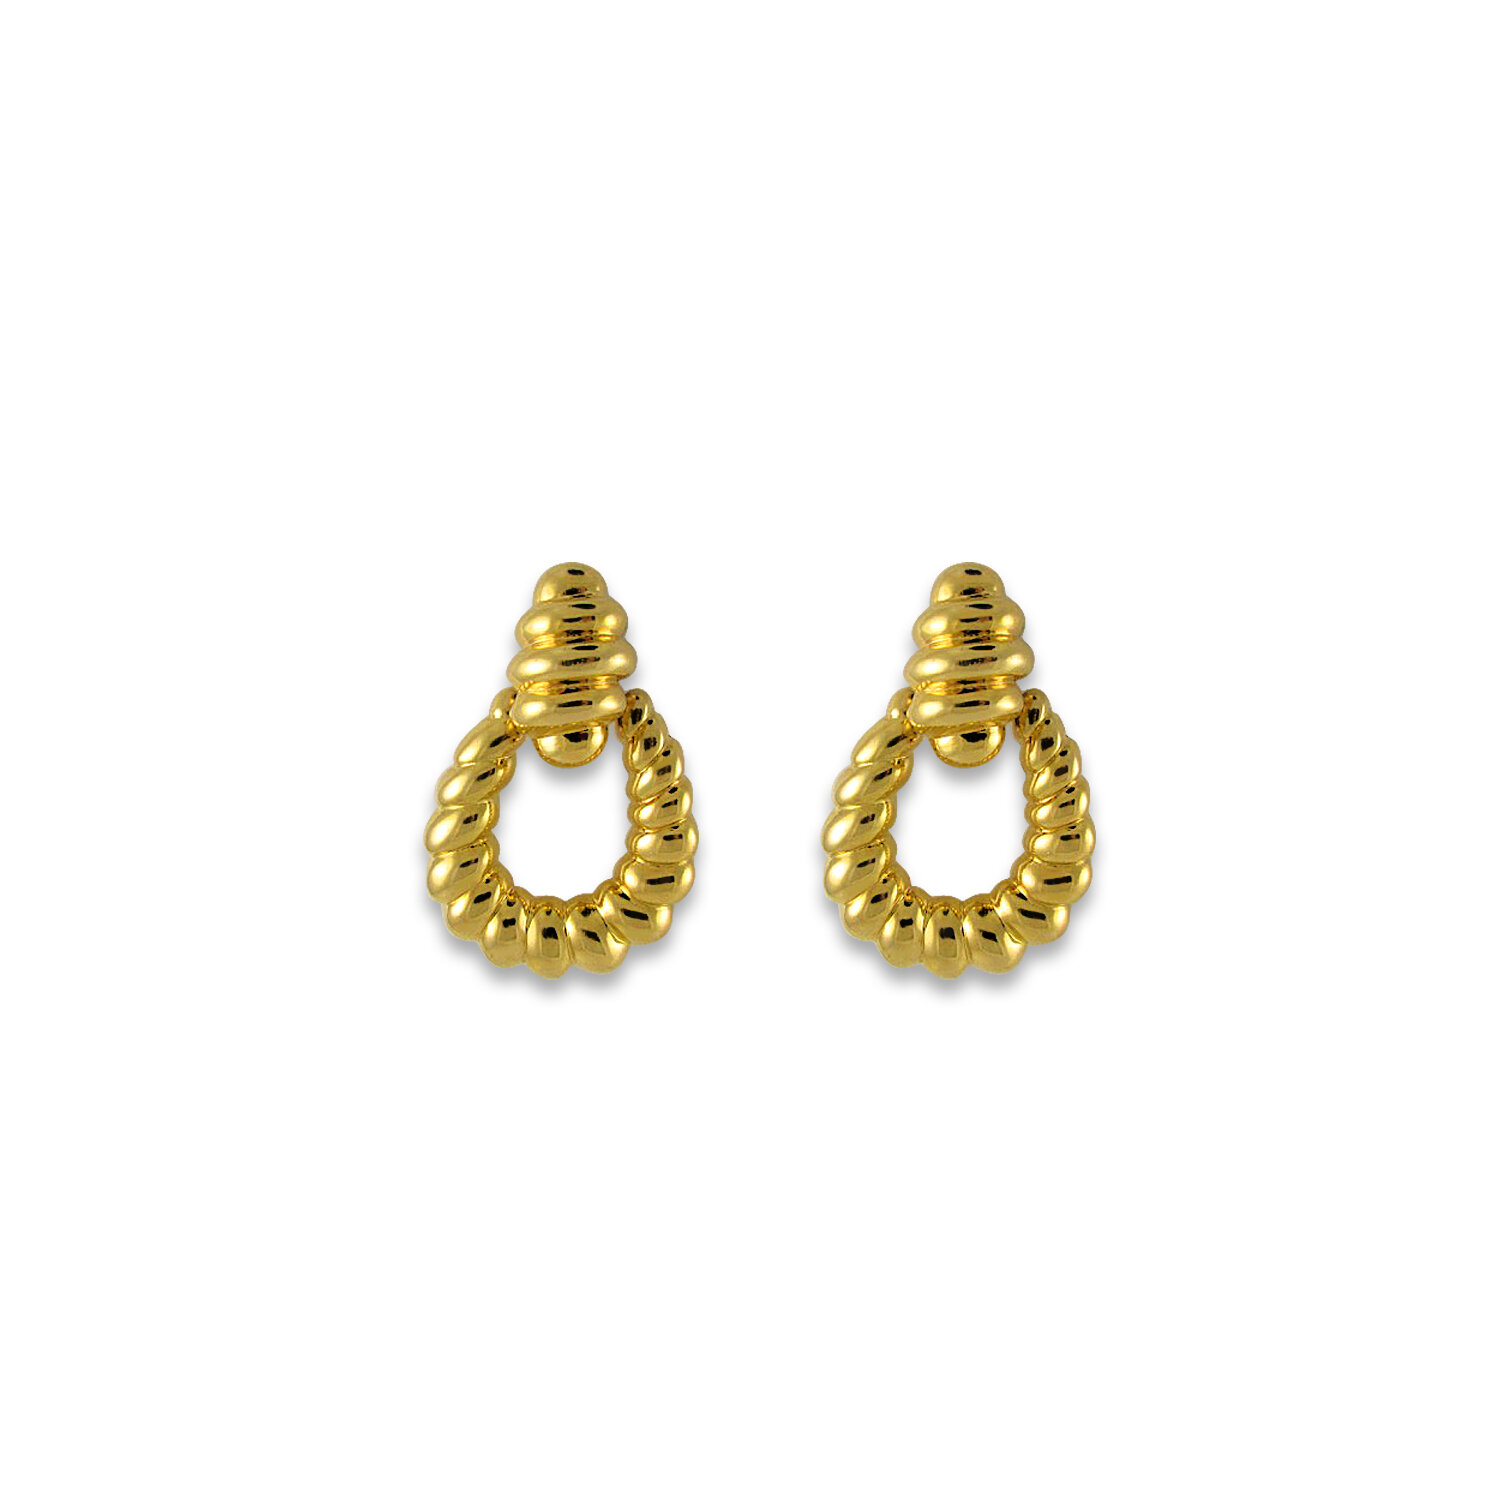 earrings.jpg